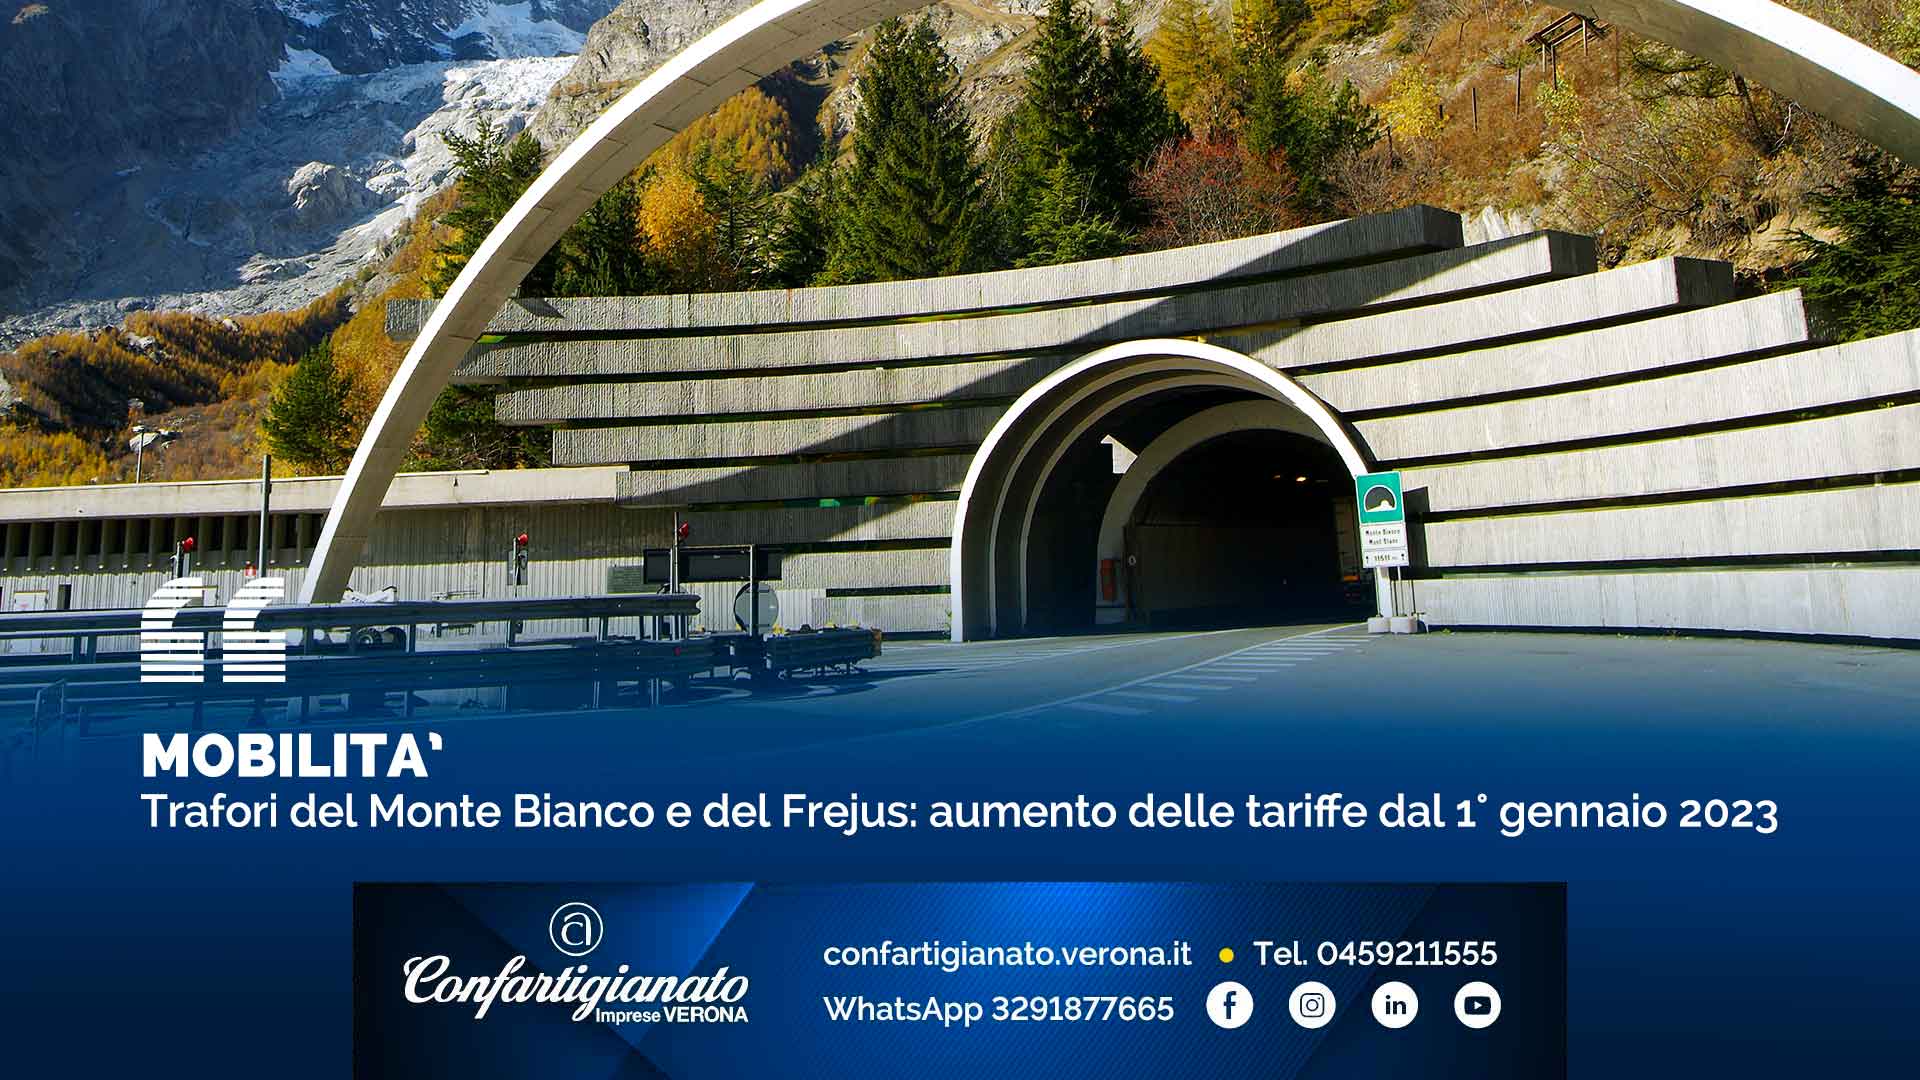 MOBILITA' – Trafori del Monte Bianco e del Frejus: aumento delle tariffe dal 1° gennaio 2023